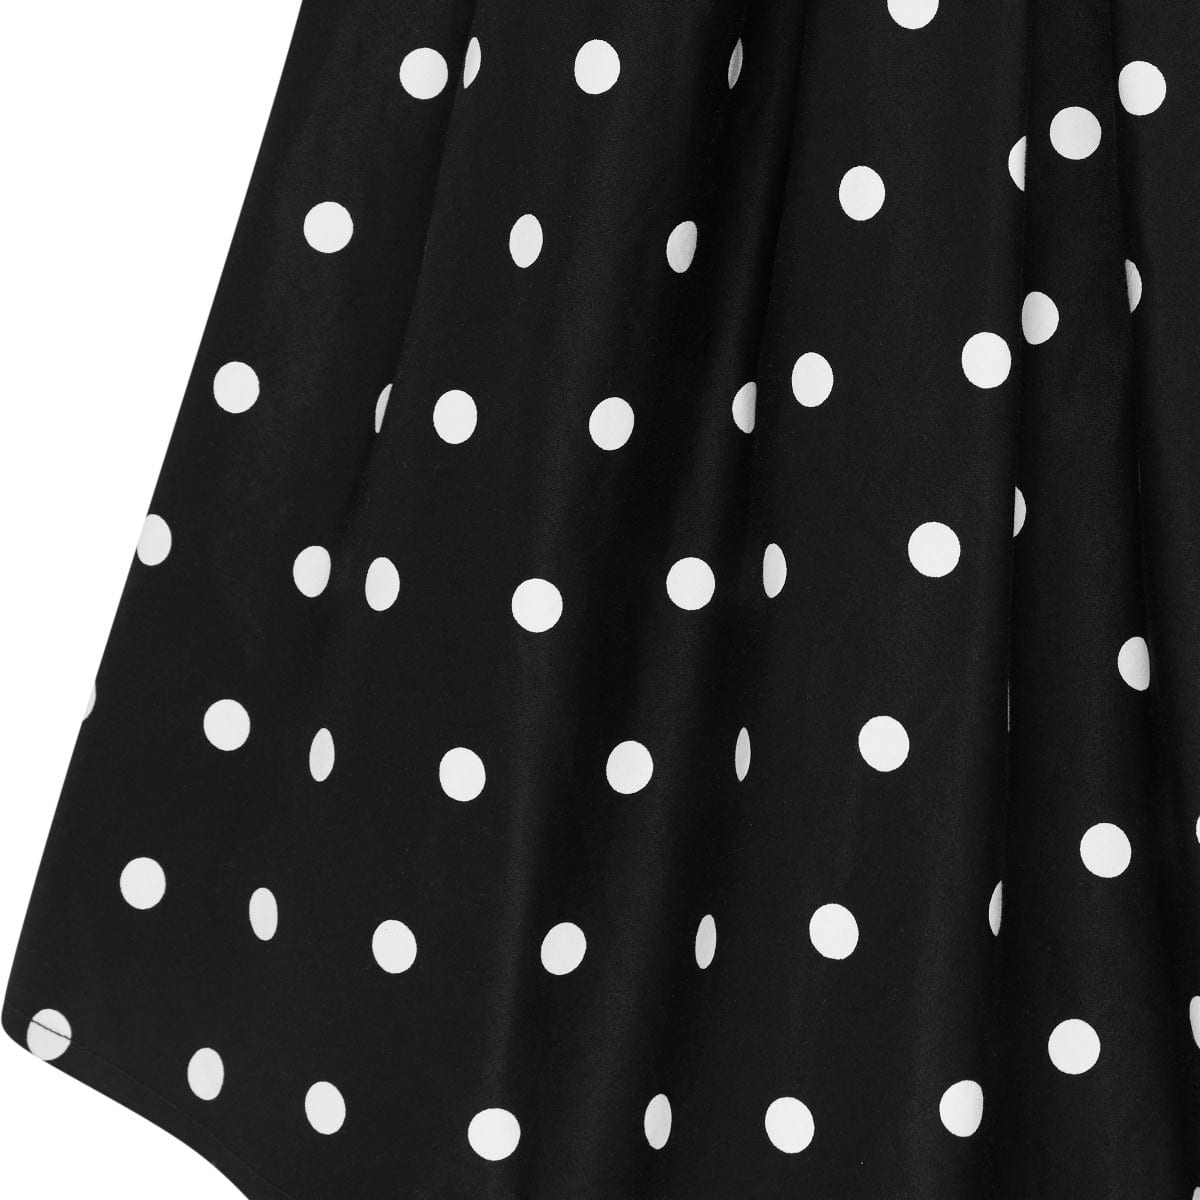 Amanda Scoop Neck 1.7cm Polka Dot Swing Dress in Black & White